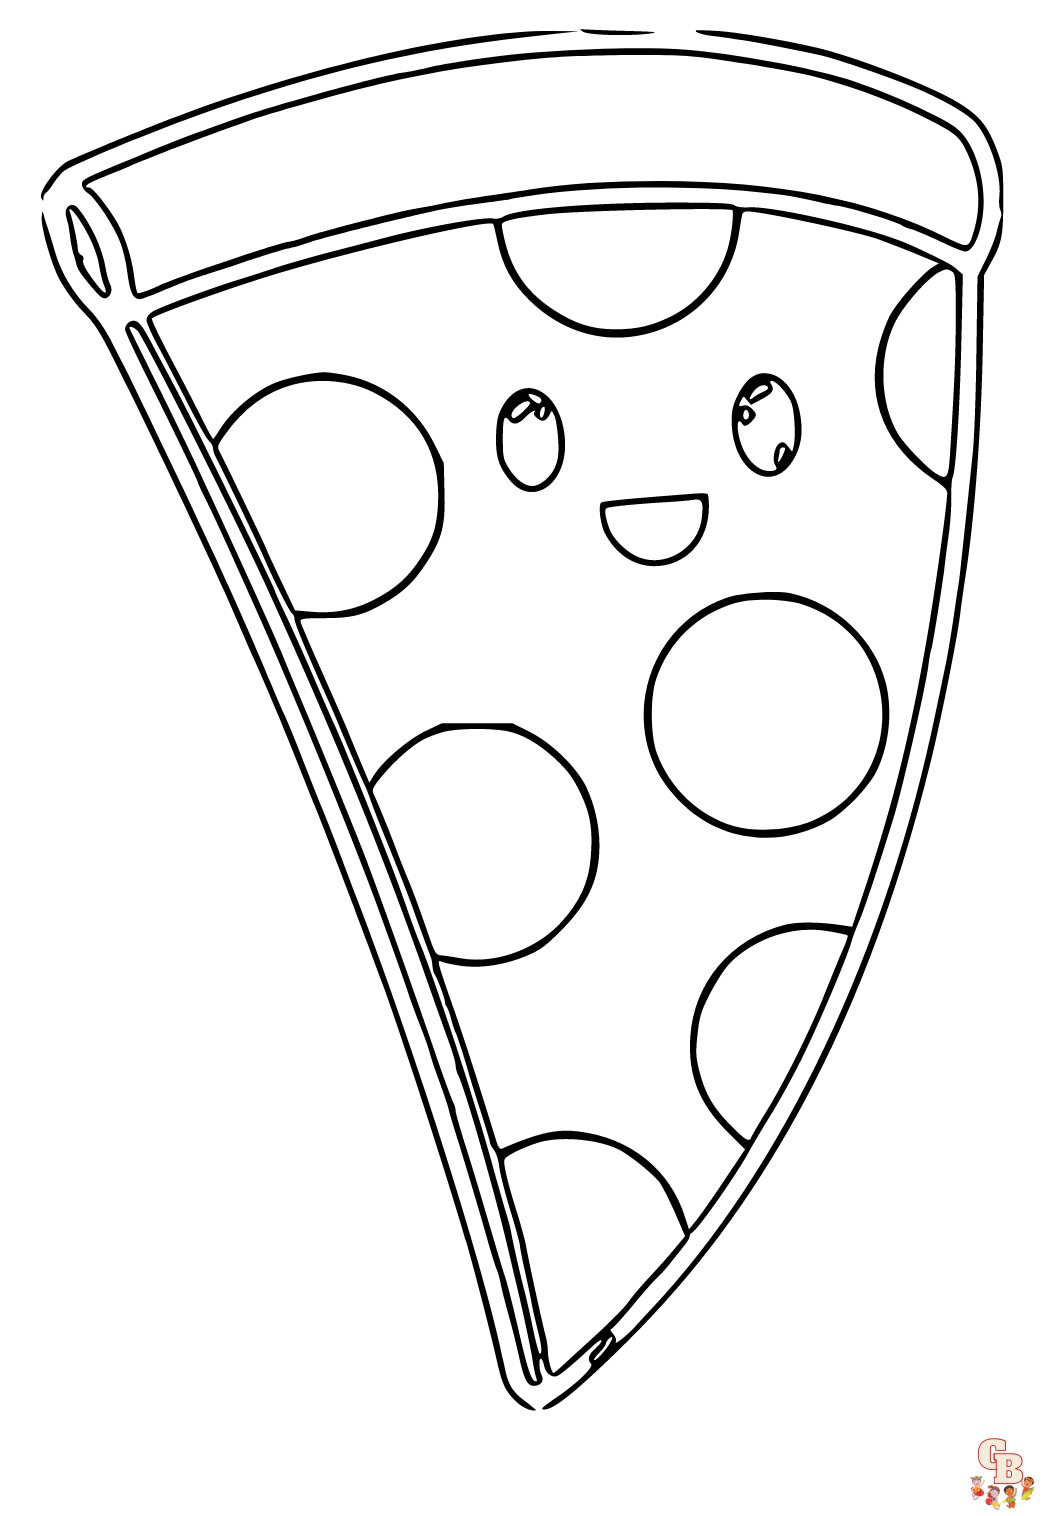 Coloriage Pizza